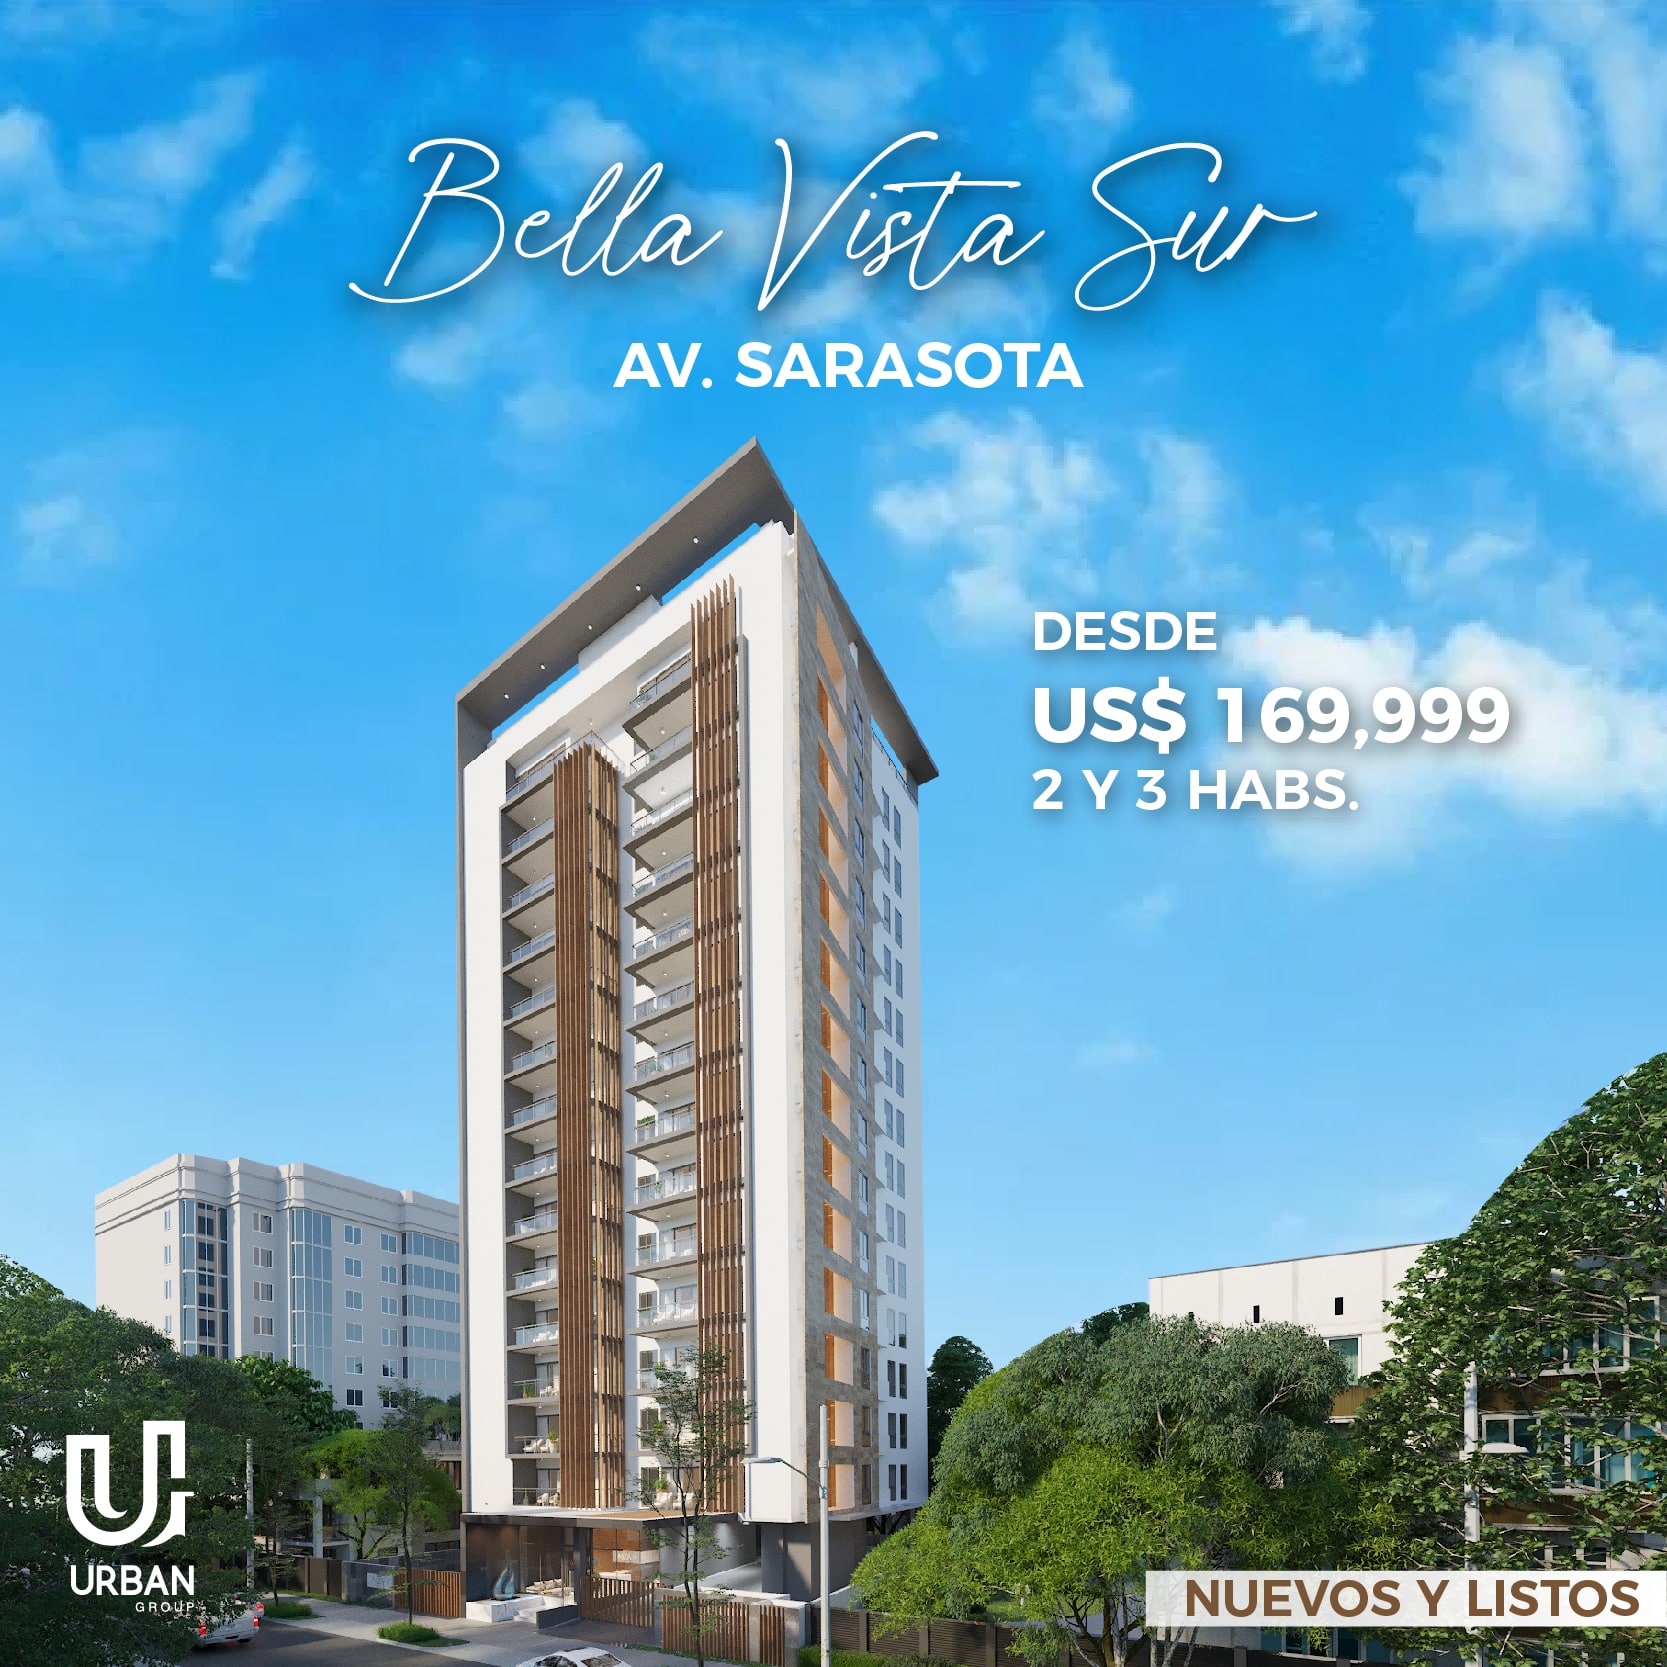 Bella Vista Sur Apartamentos de 2 y 3 Habitaciones